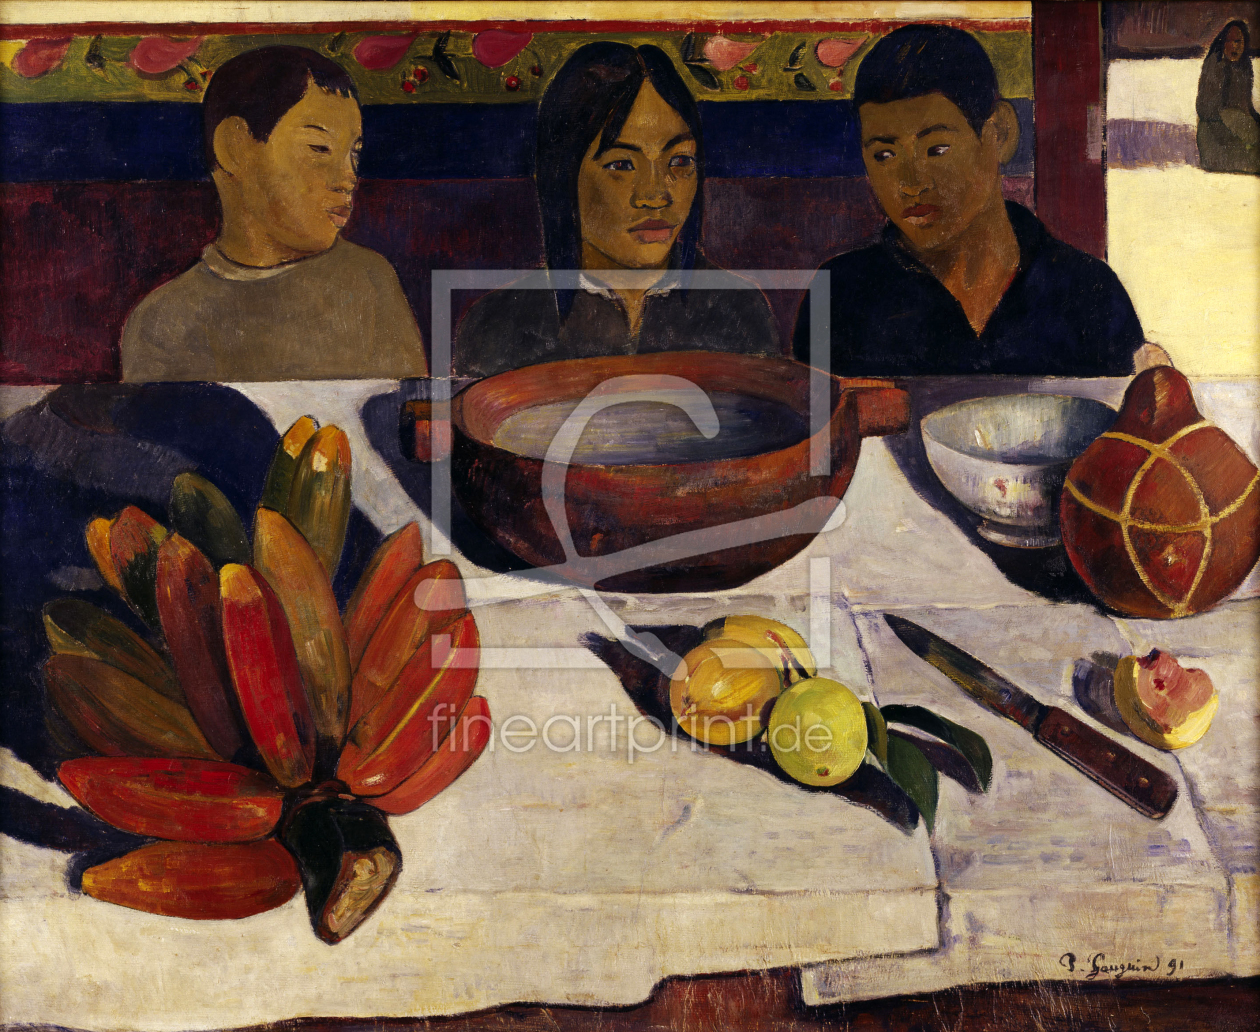 Bild-Nr.: 30001862 Gauguin, Tahitian boys at table erstellt von Gauguin, Paul